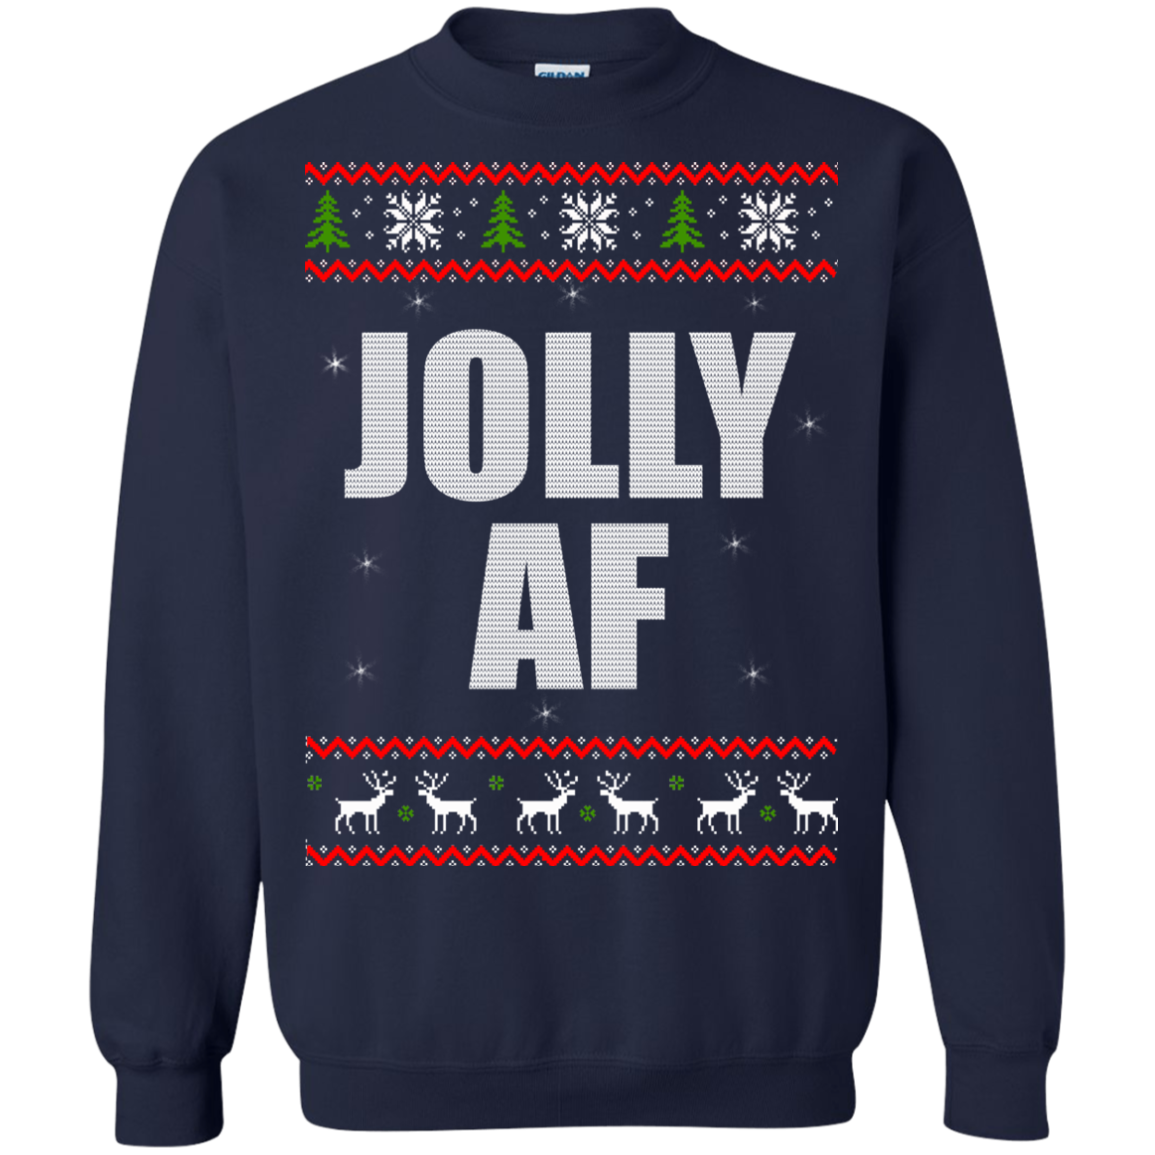 Jolly AF Christmas Sweater, Hoodie | TeeDragons.com